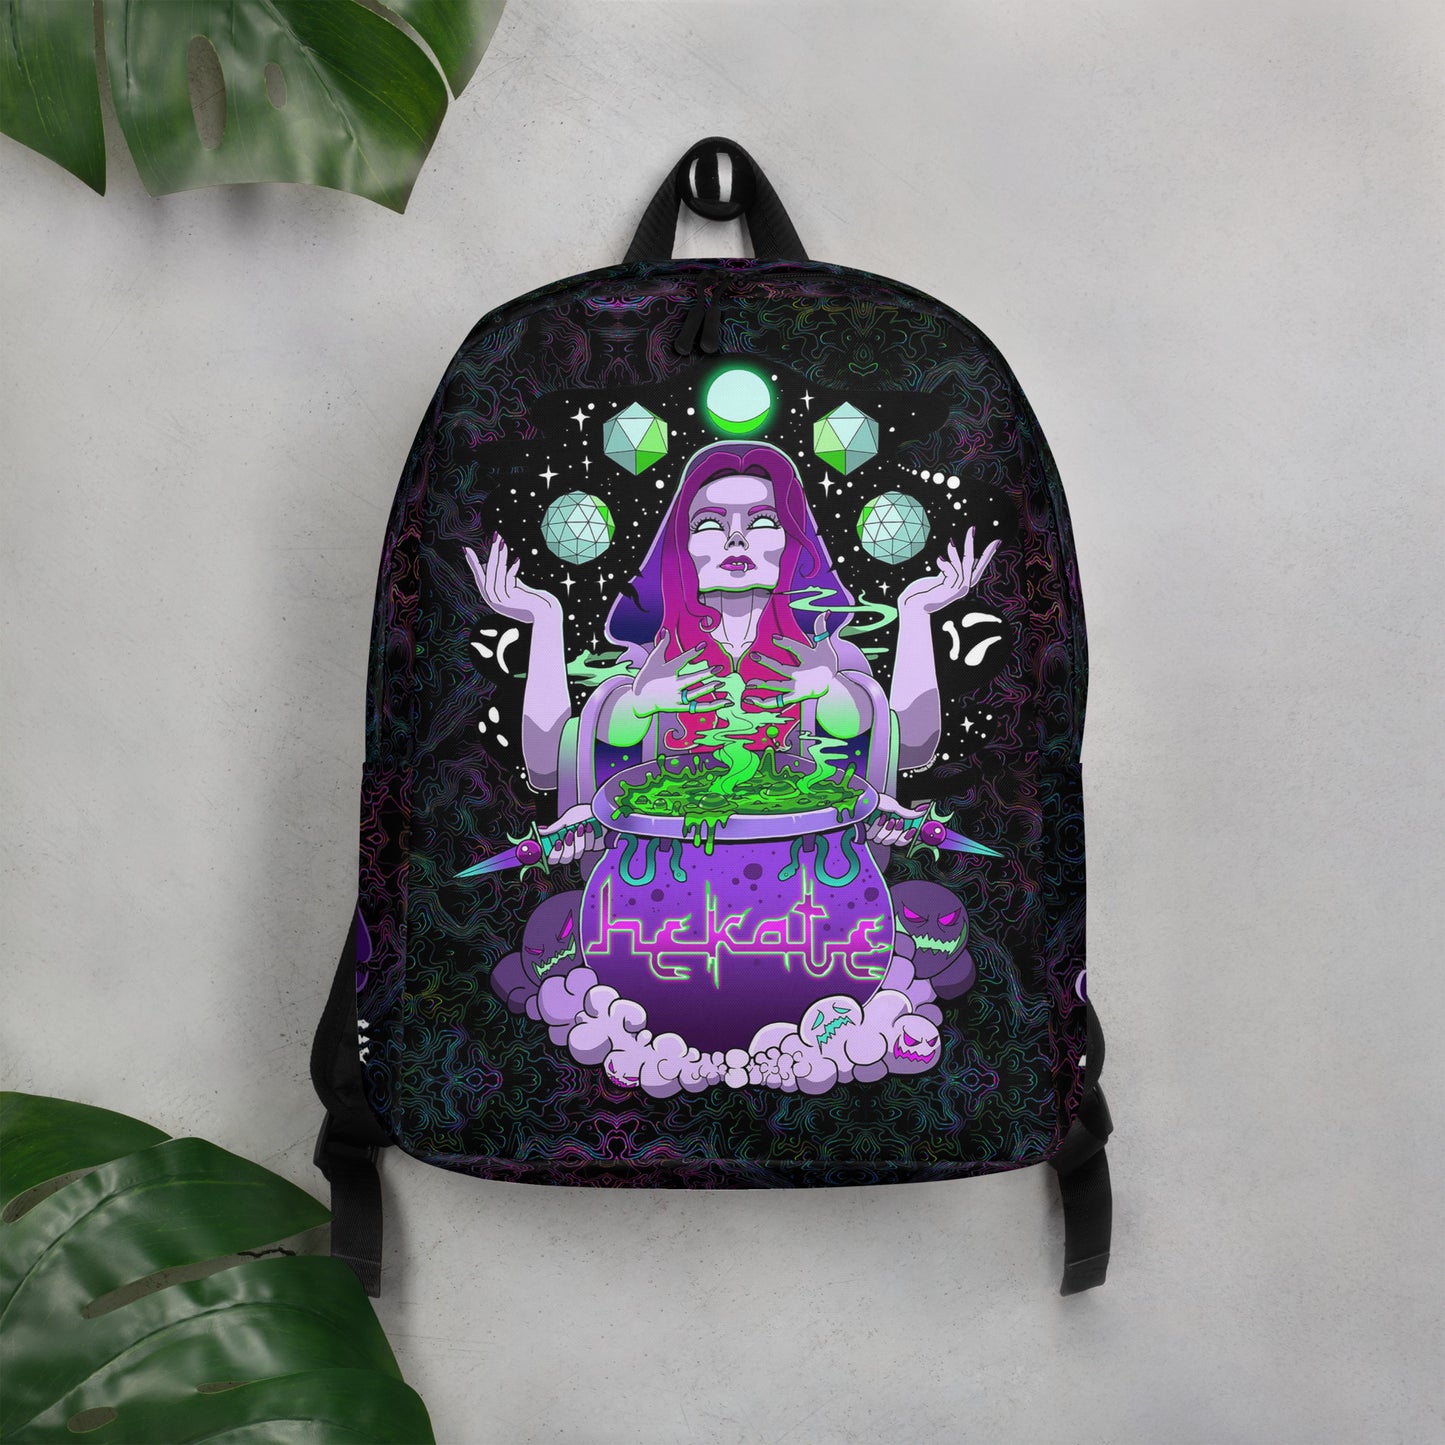 HEKATE 'MOON MAGIC' (Backpack)